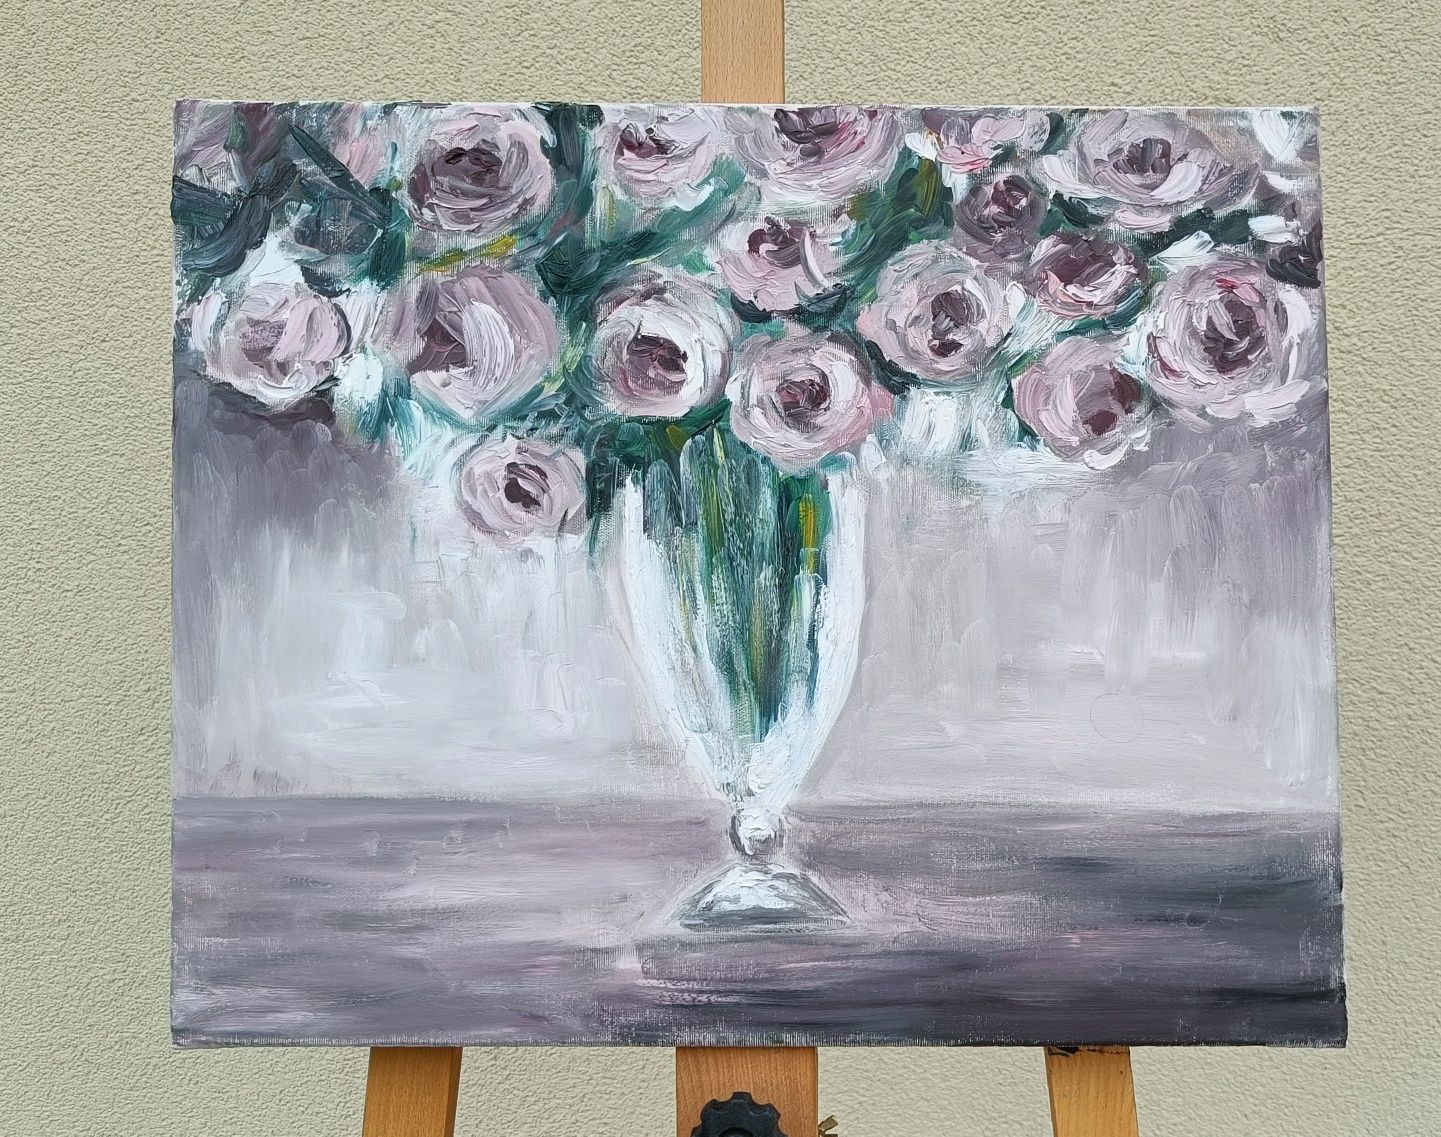 Obraz olejny Róże w wazonie